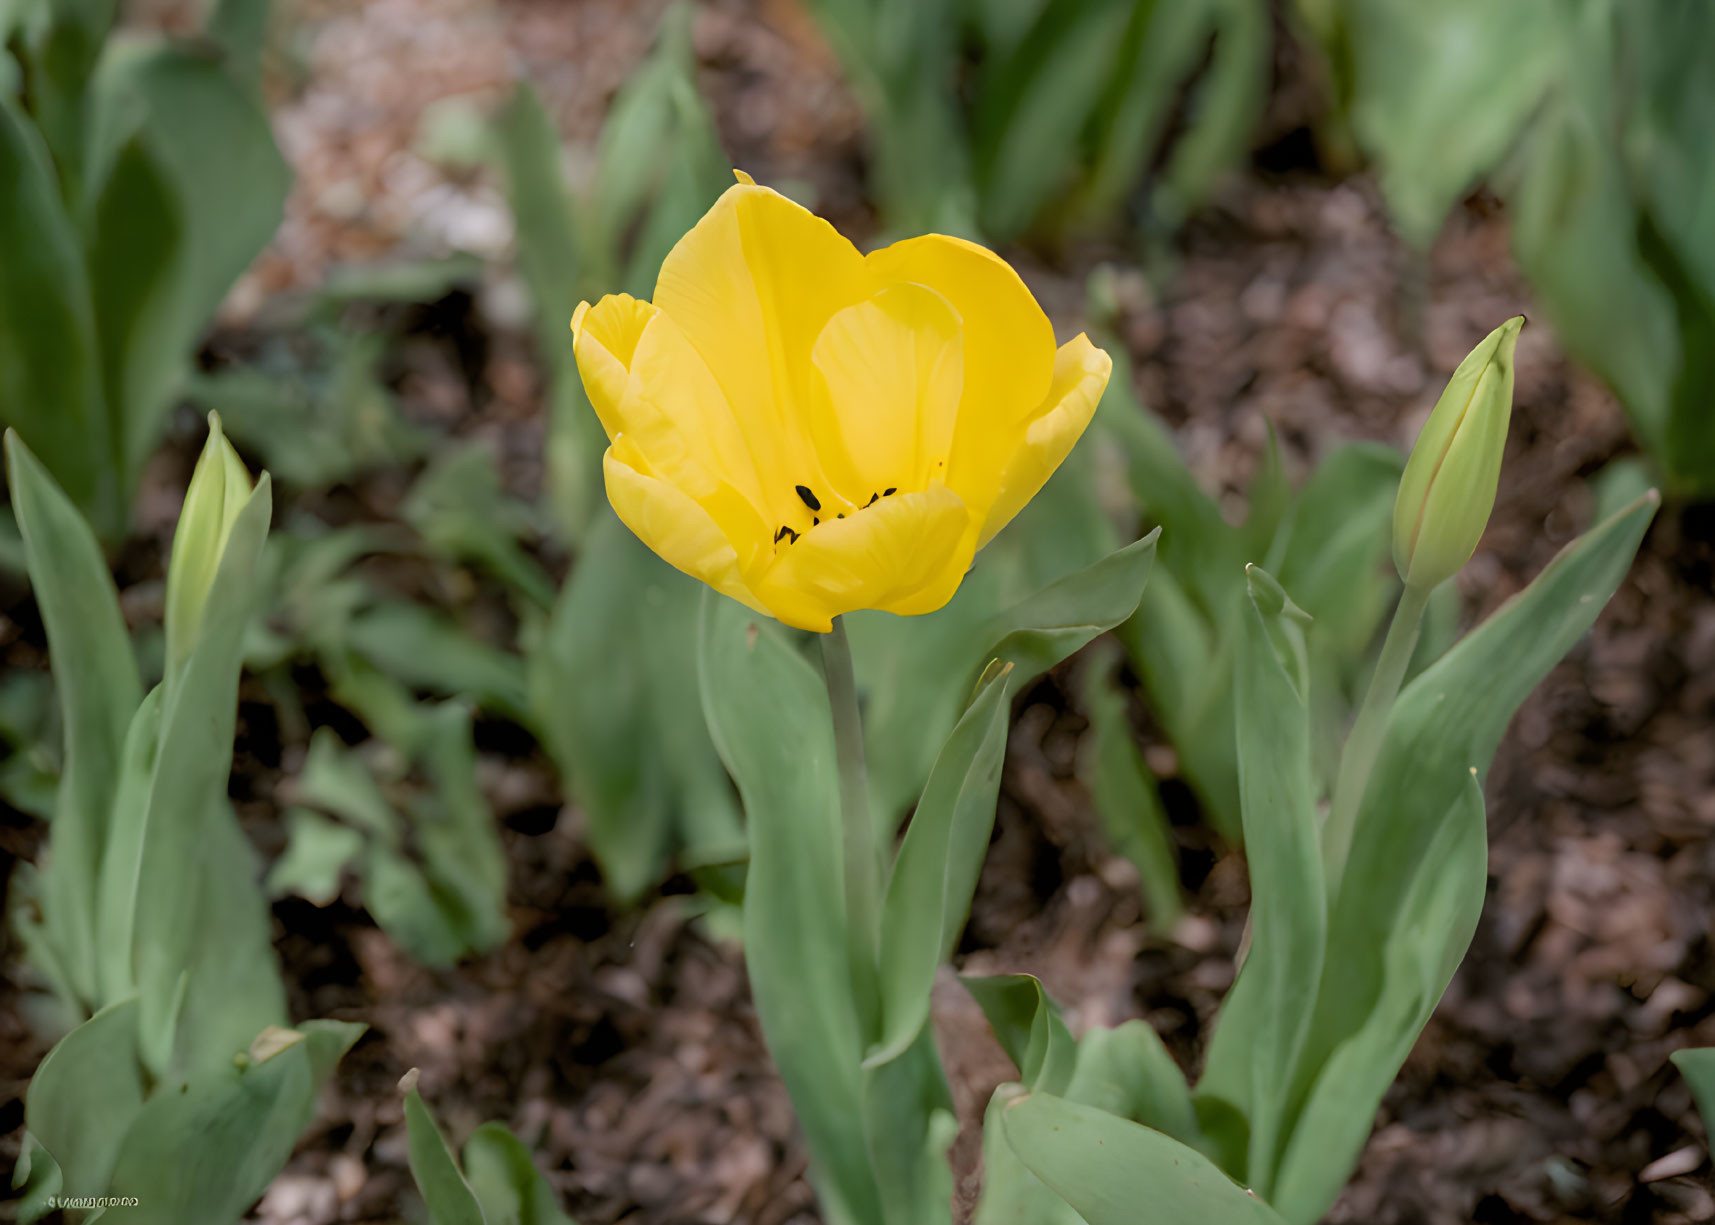 yellow tulip